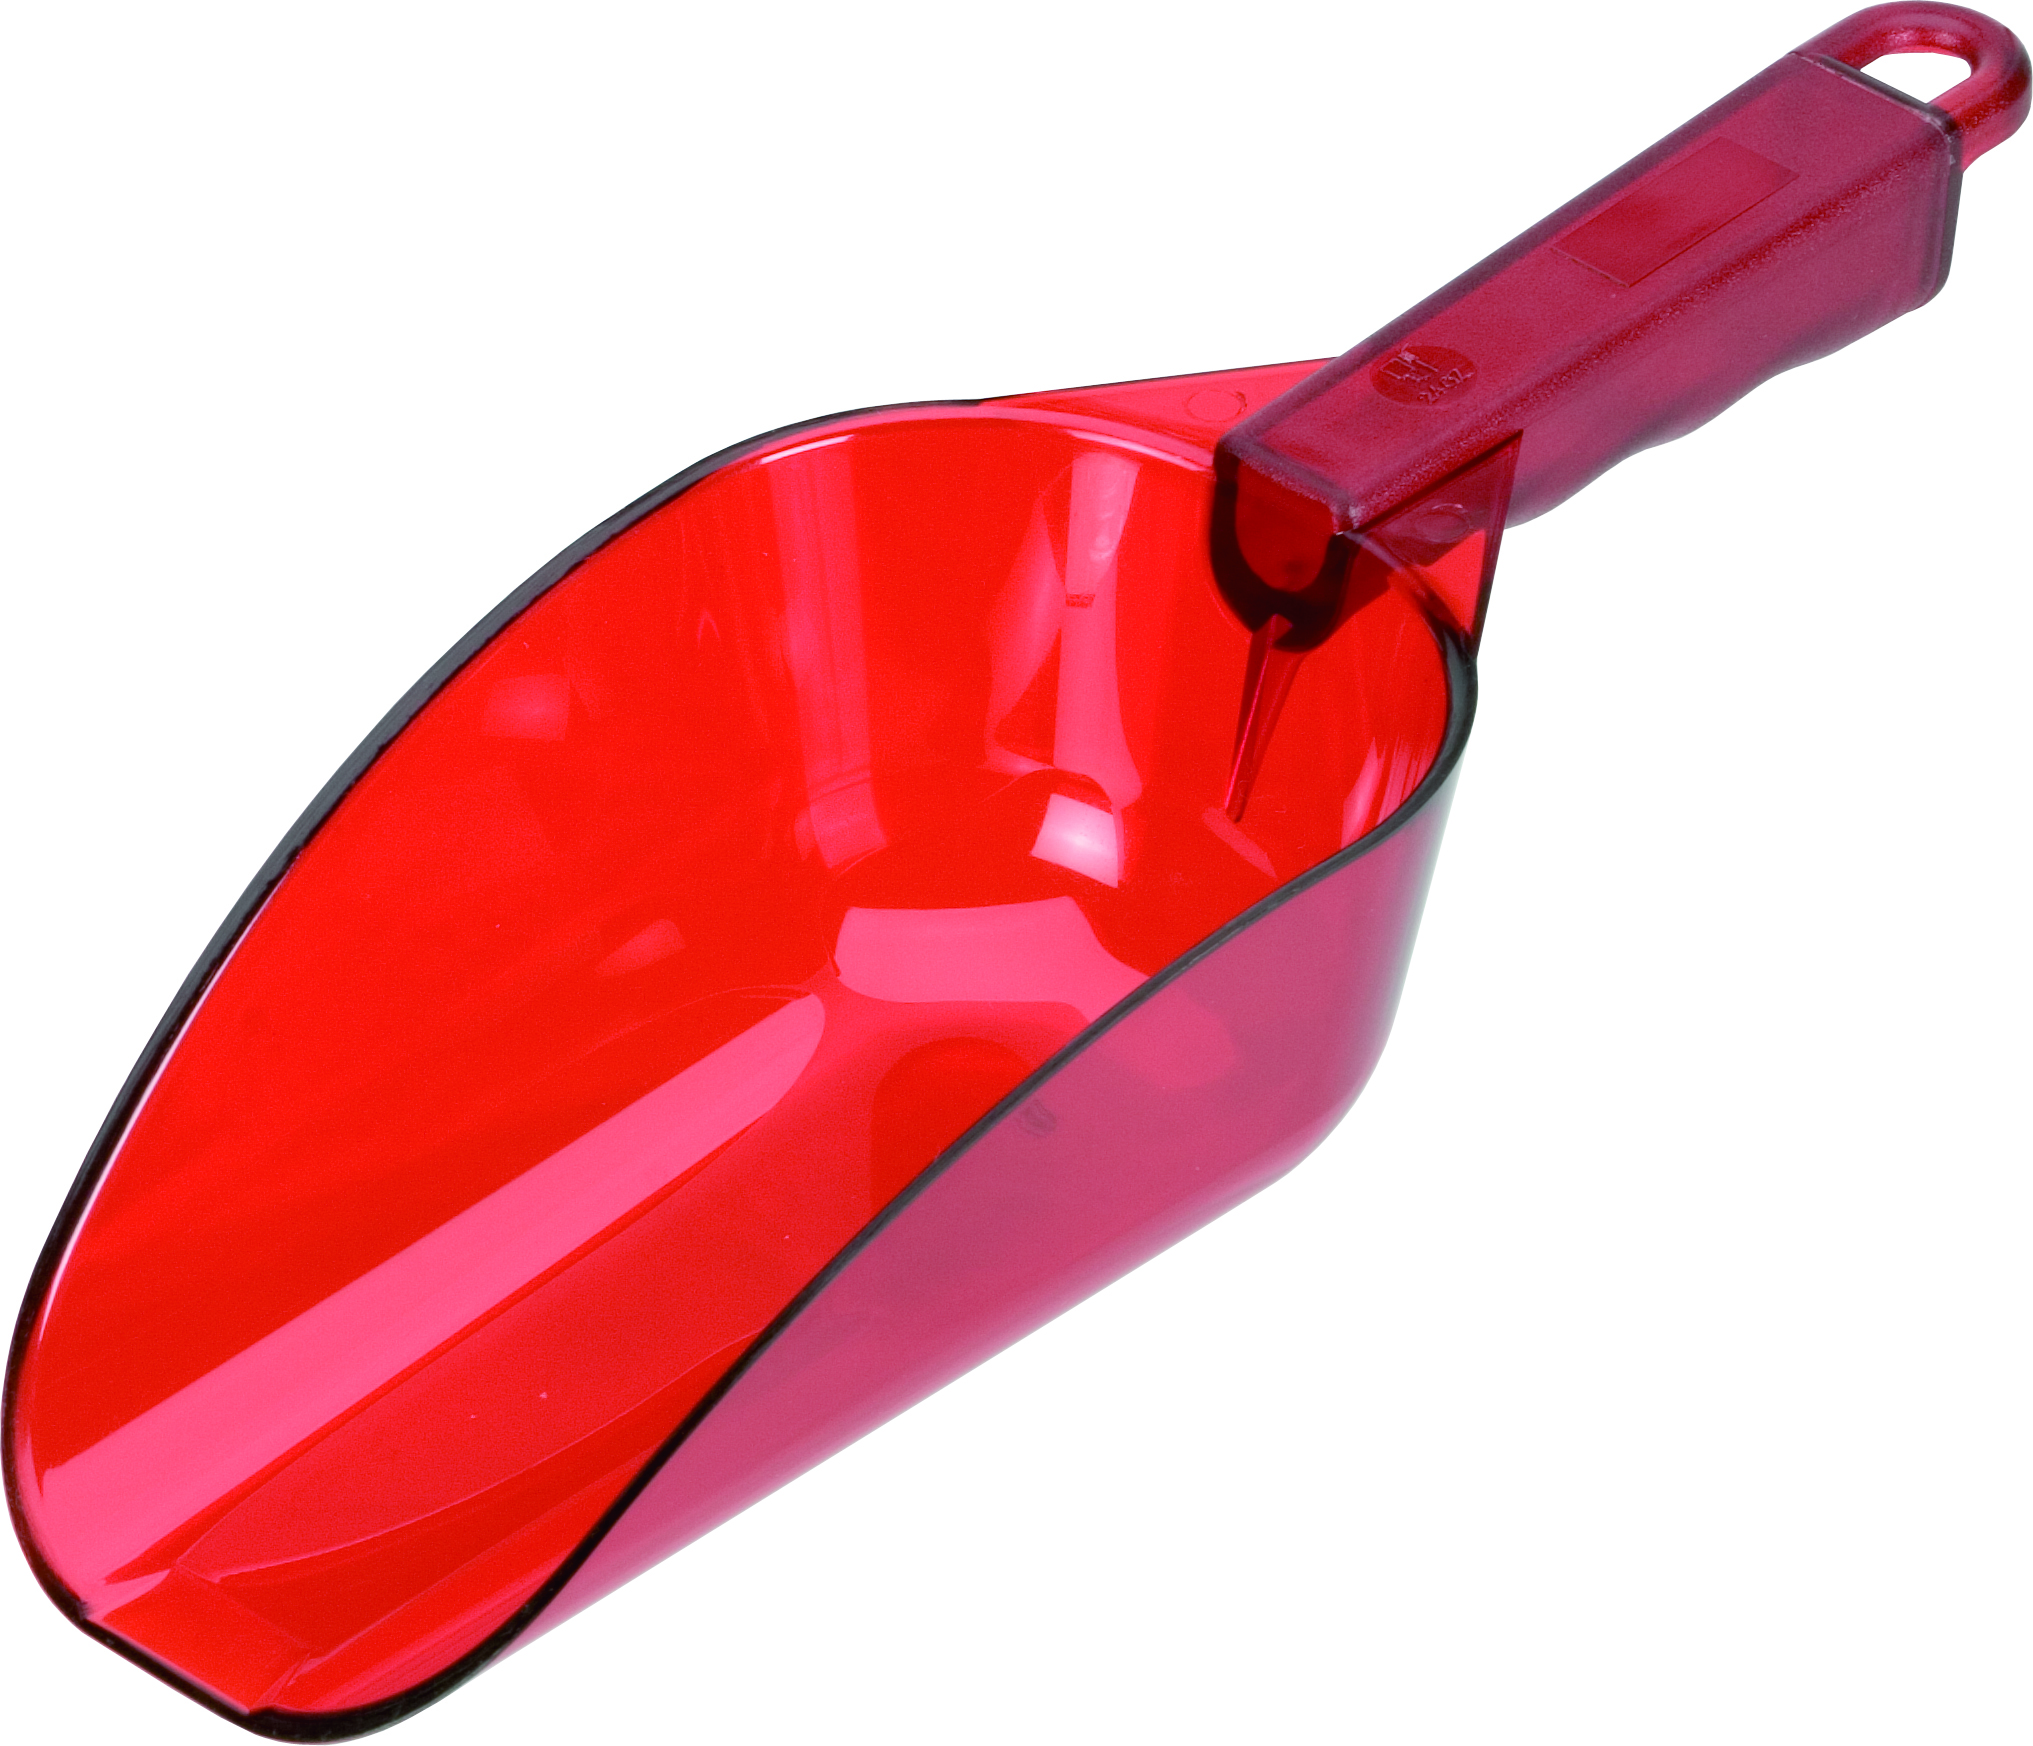 Eisschaufel, Polycarbonat transparent rot - 0,18l